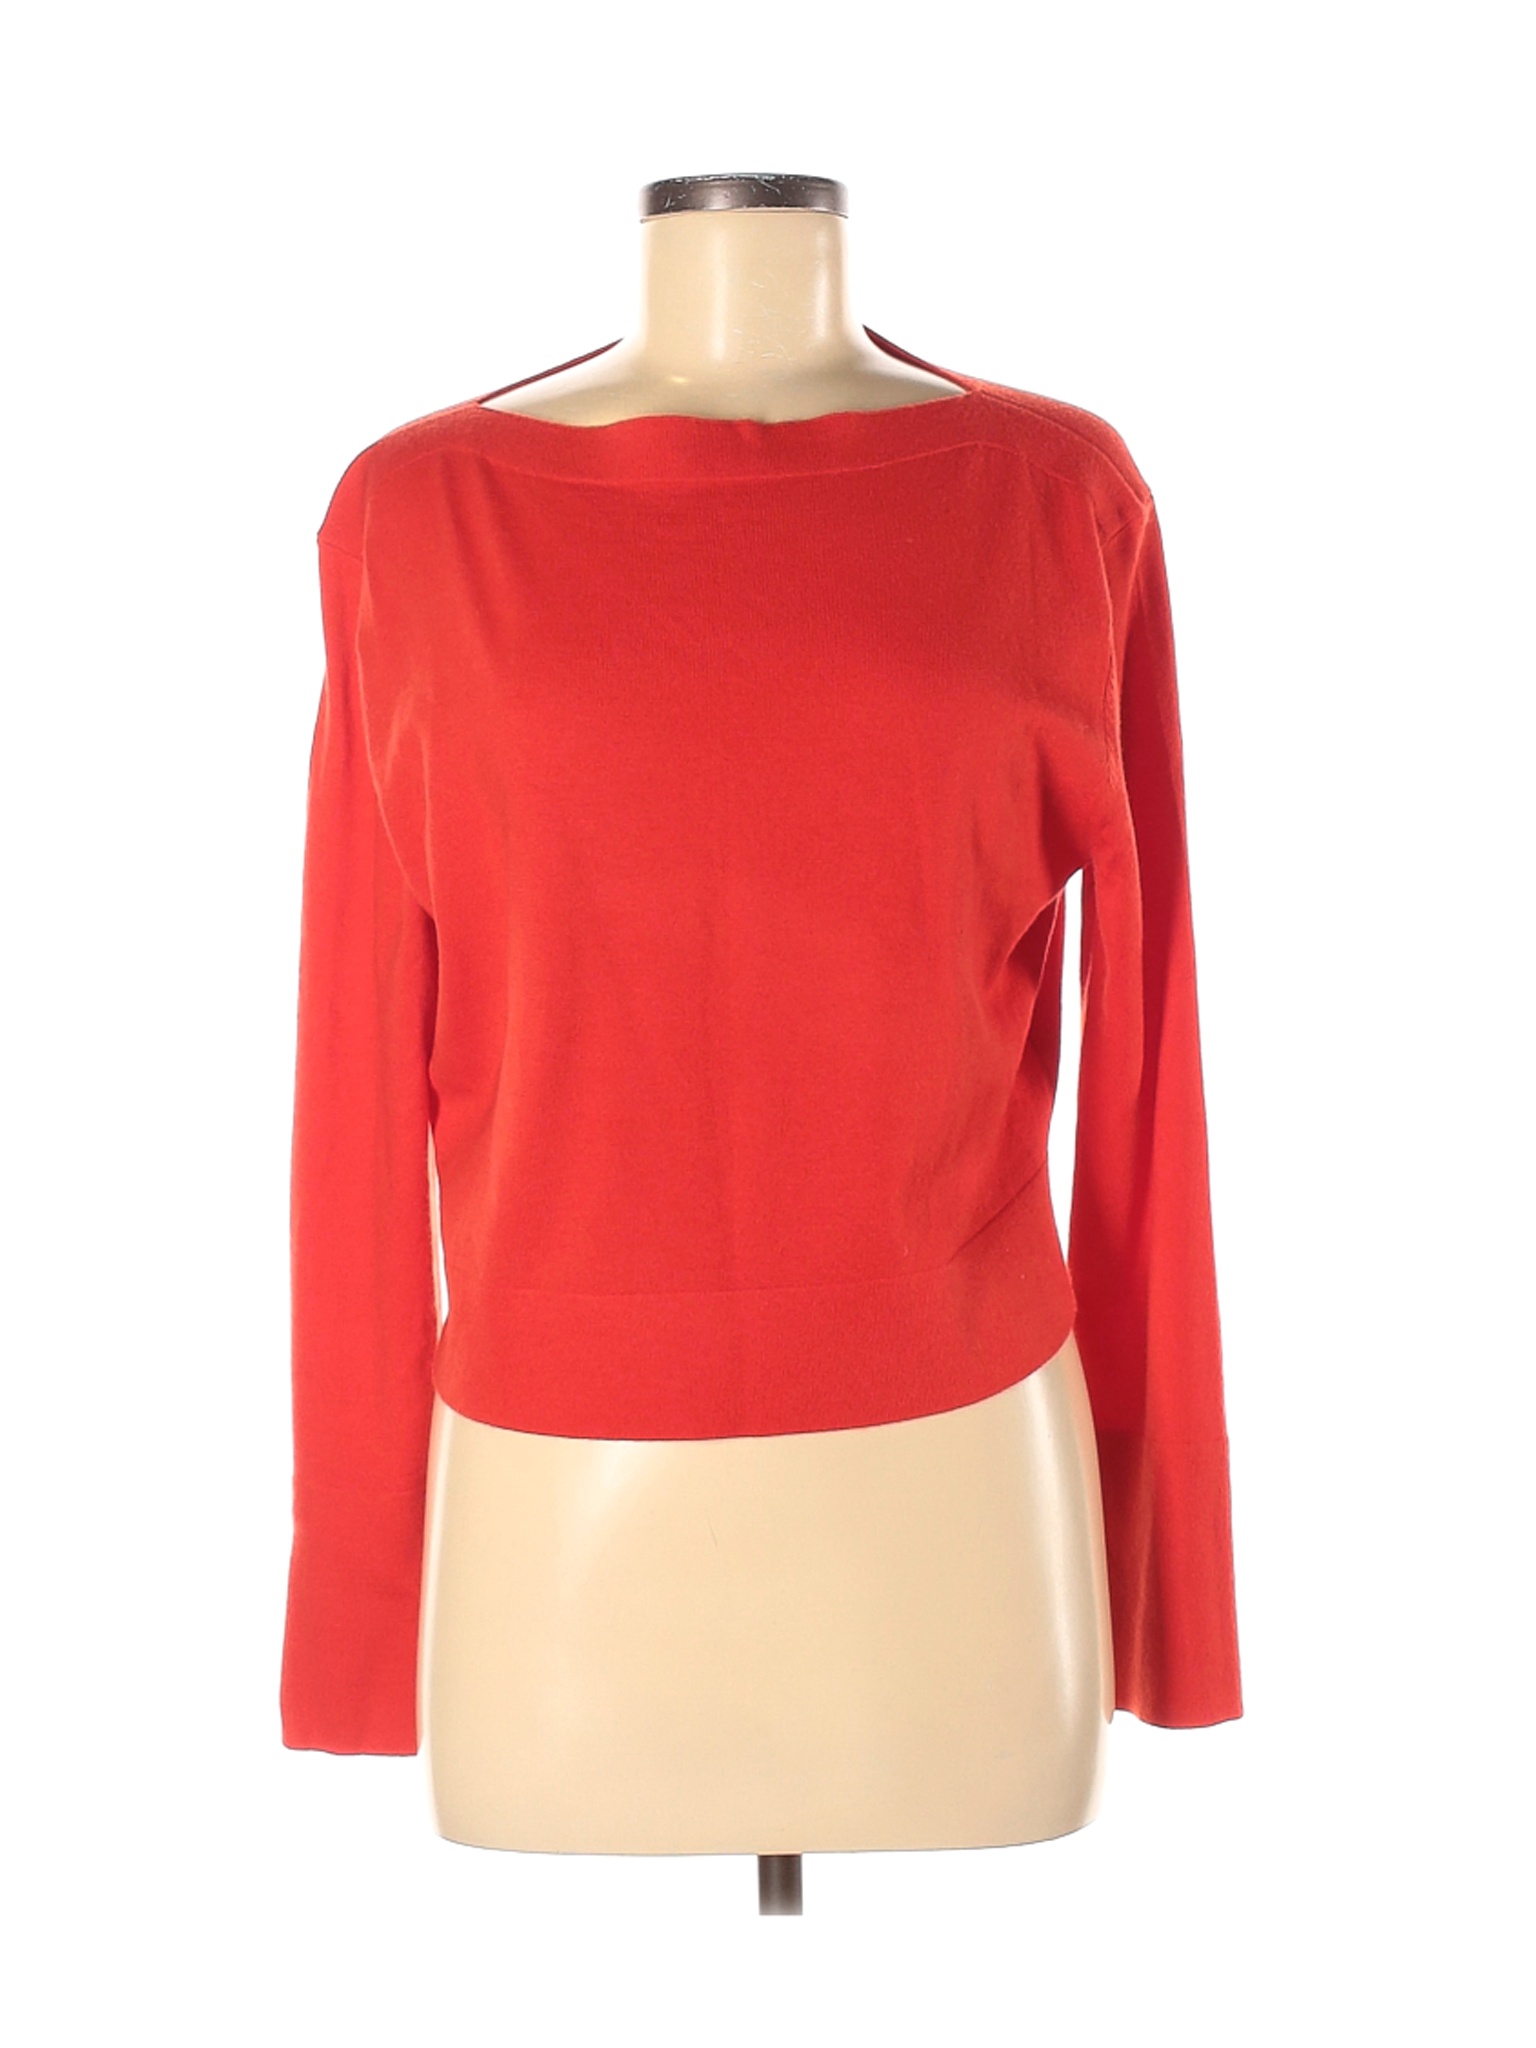 Uniqlo Women Red Pullover Sweater M | eBay